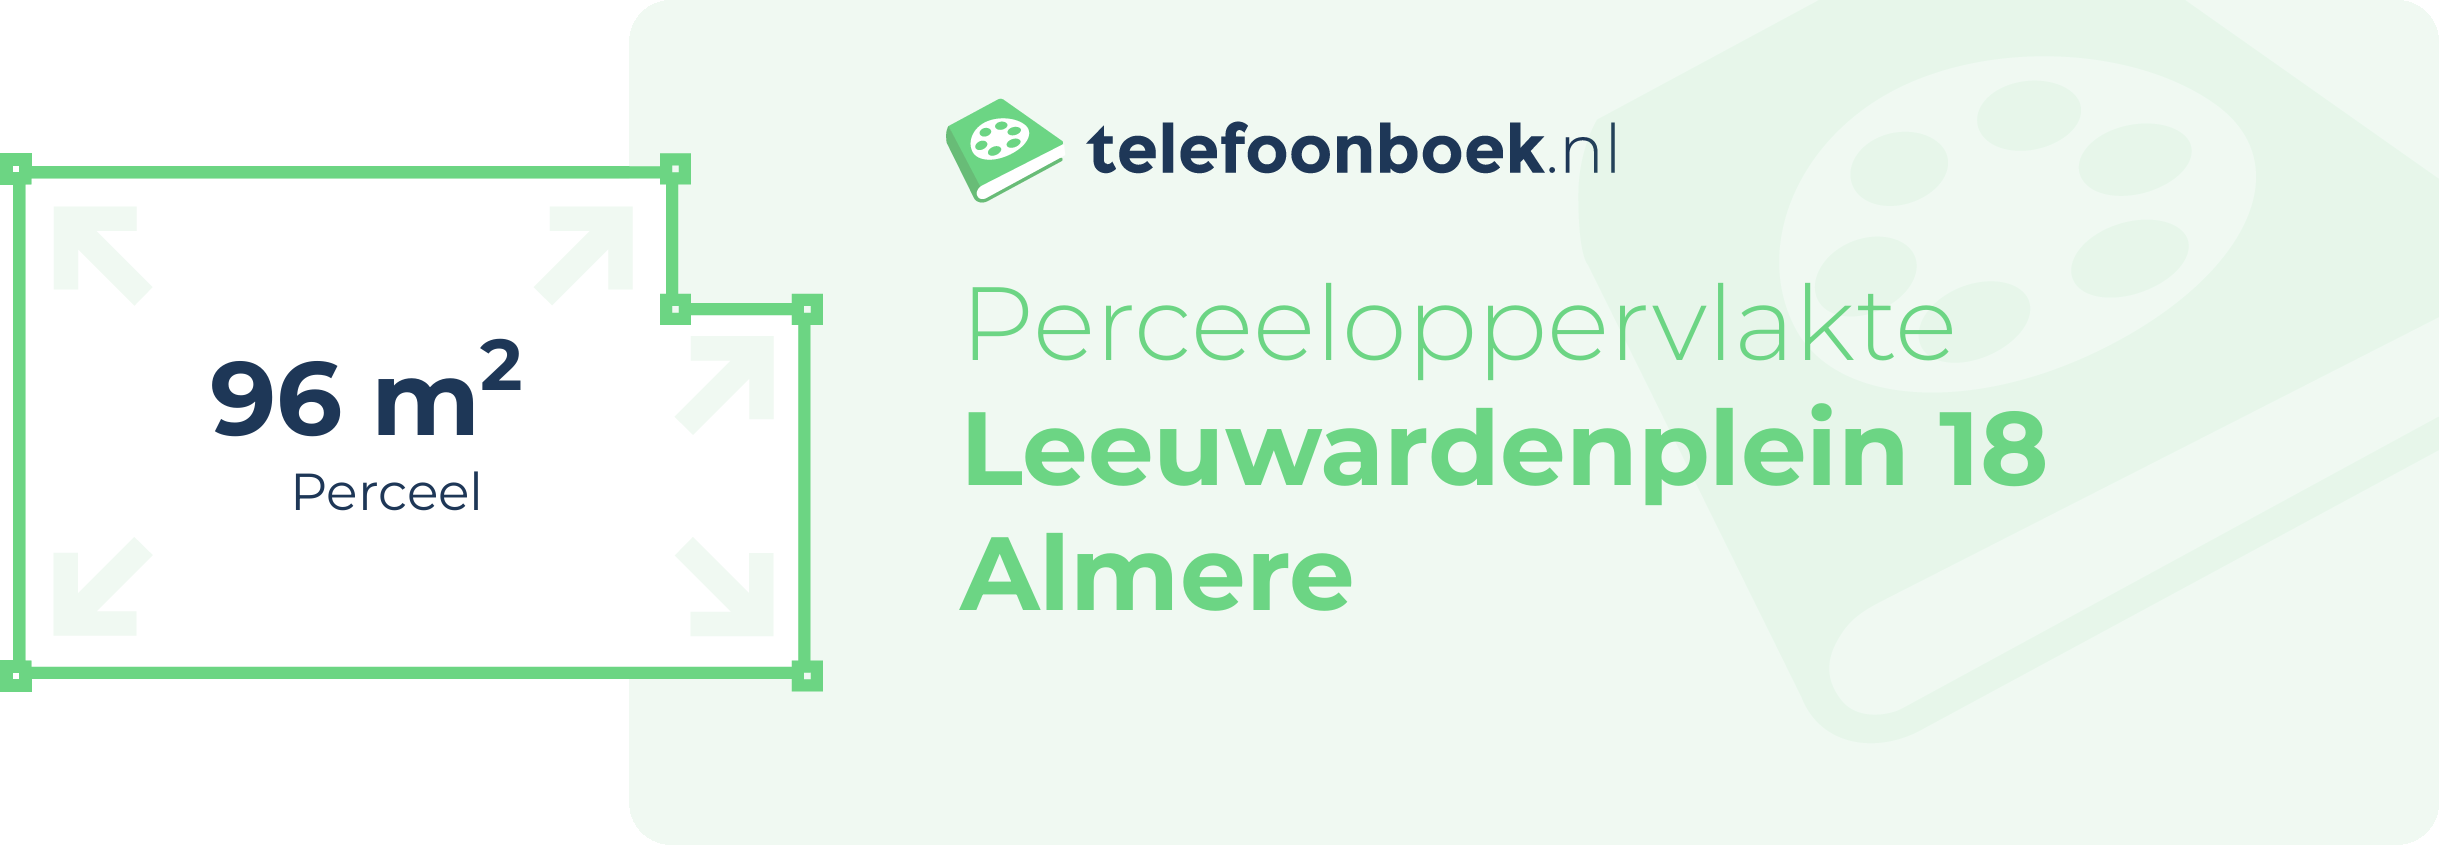 Perceeloppervlakte Leeuwardenplein 18 Almere